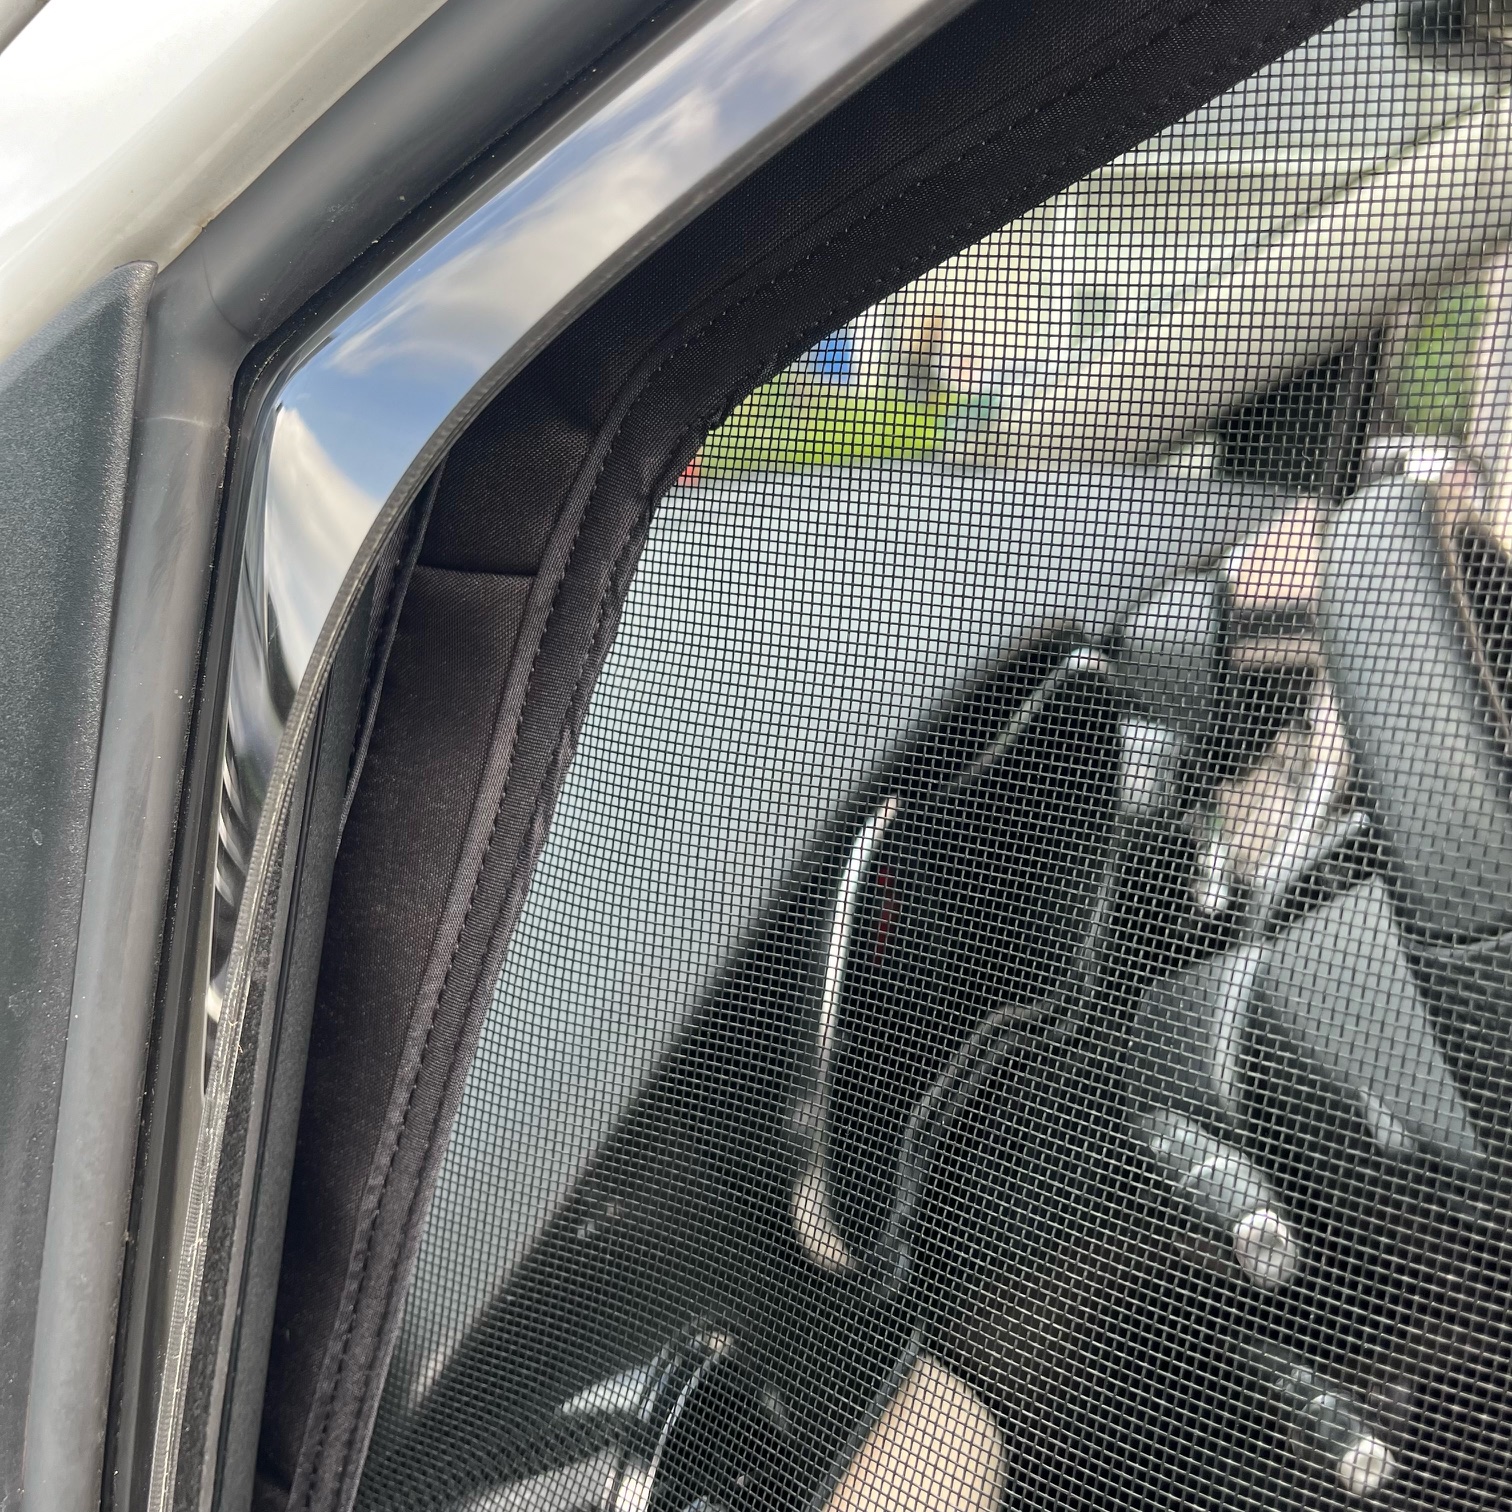 Beifahrertürfenster Magnet-Moskitonetz von ProjectCamper für die V-Klasse / Vito / Marco Polo 